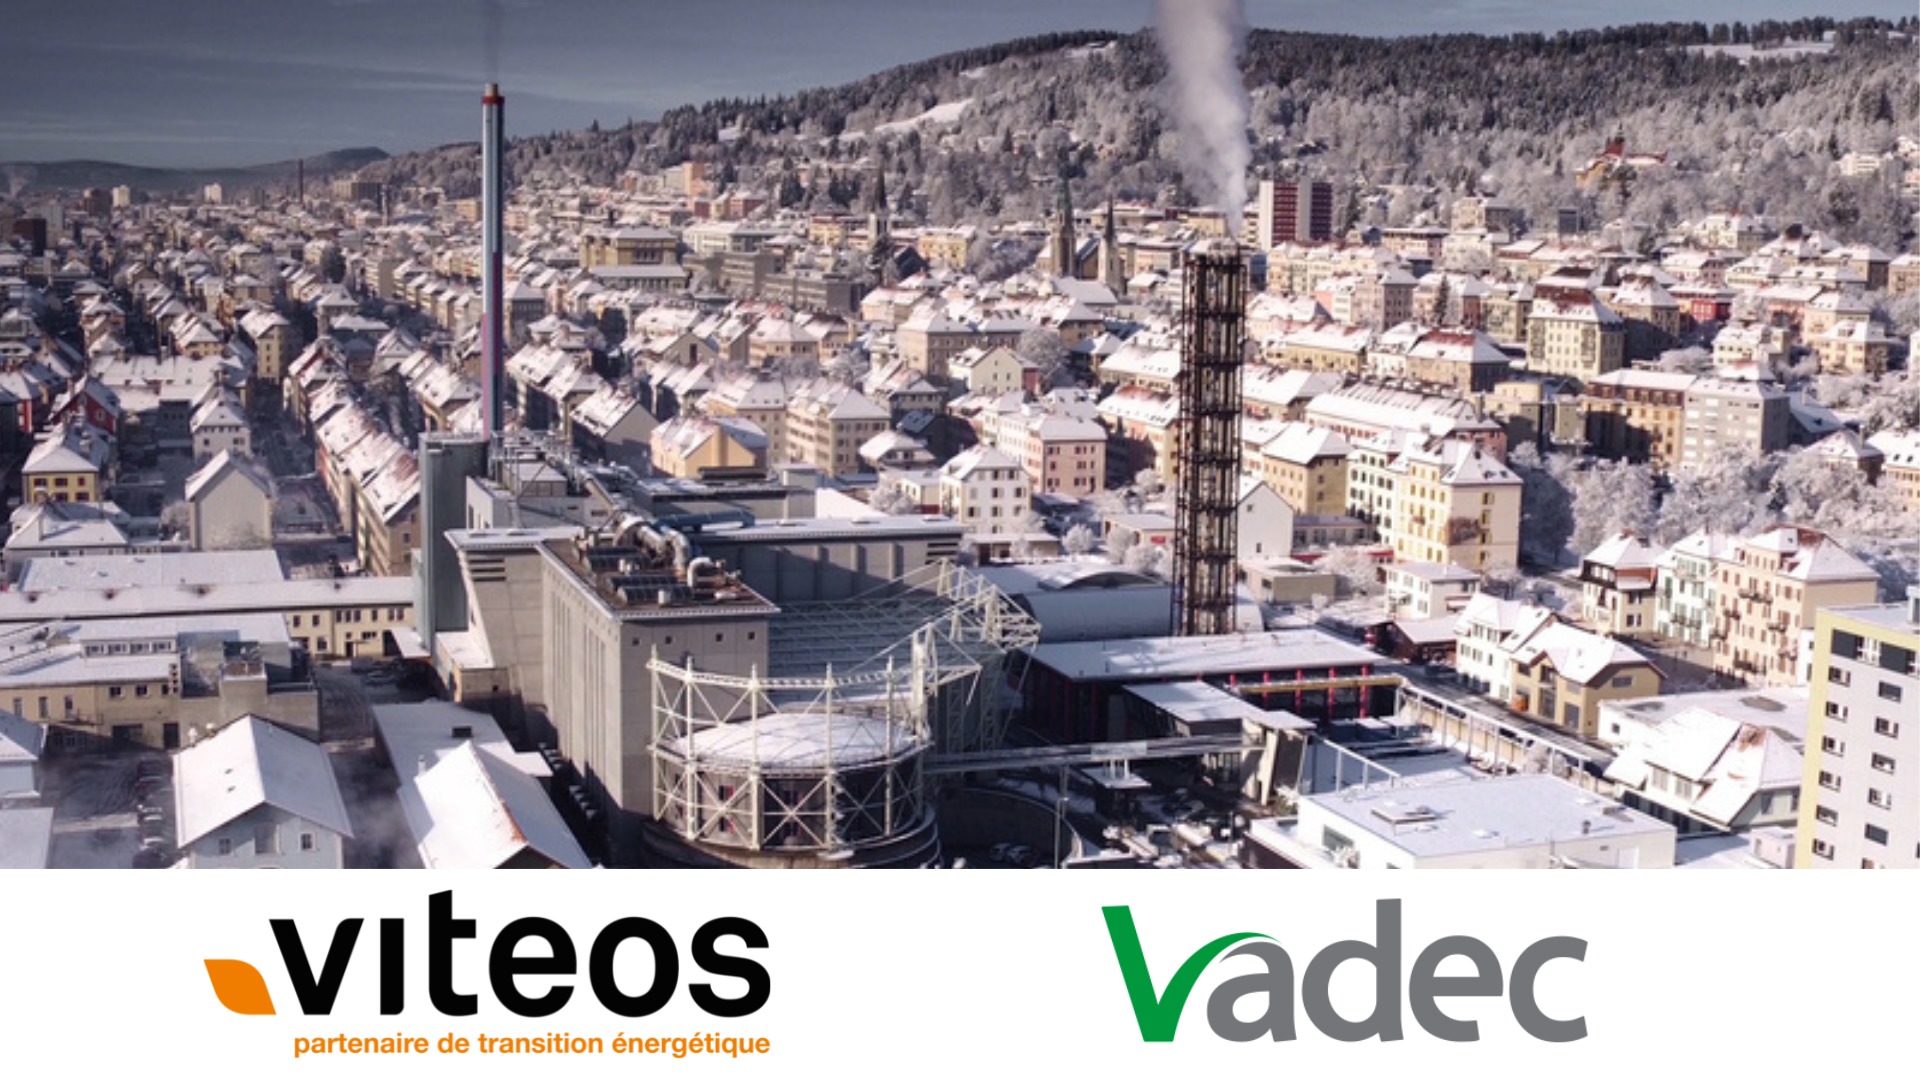 Avec une architecture en damier et l’usine Vadec, le déploiement du chauffage à distance est facilité. (Photo : Viteos)